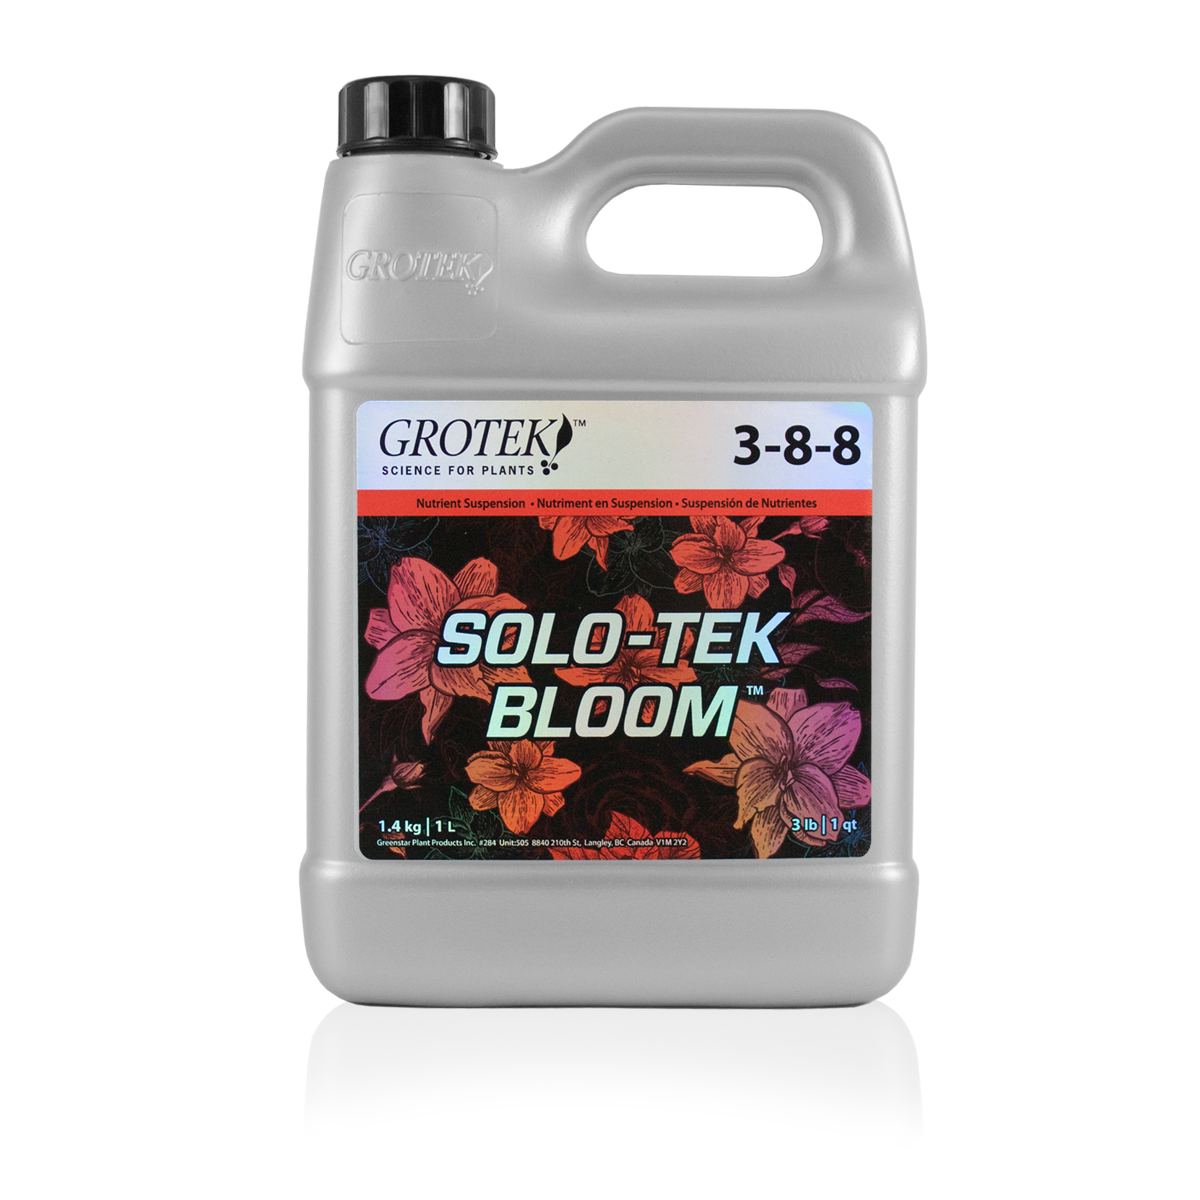 Solo-tek Bloom by Grotek